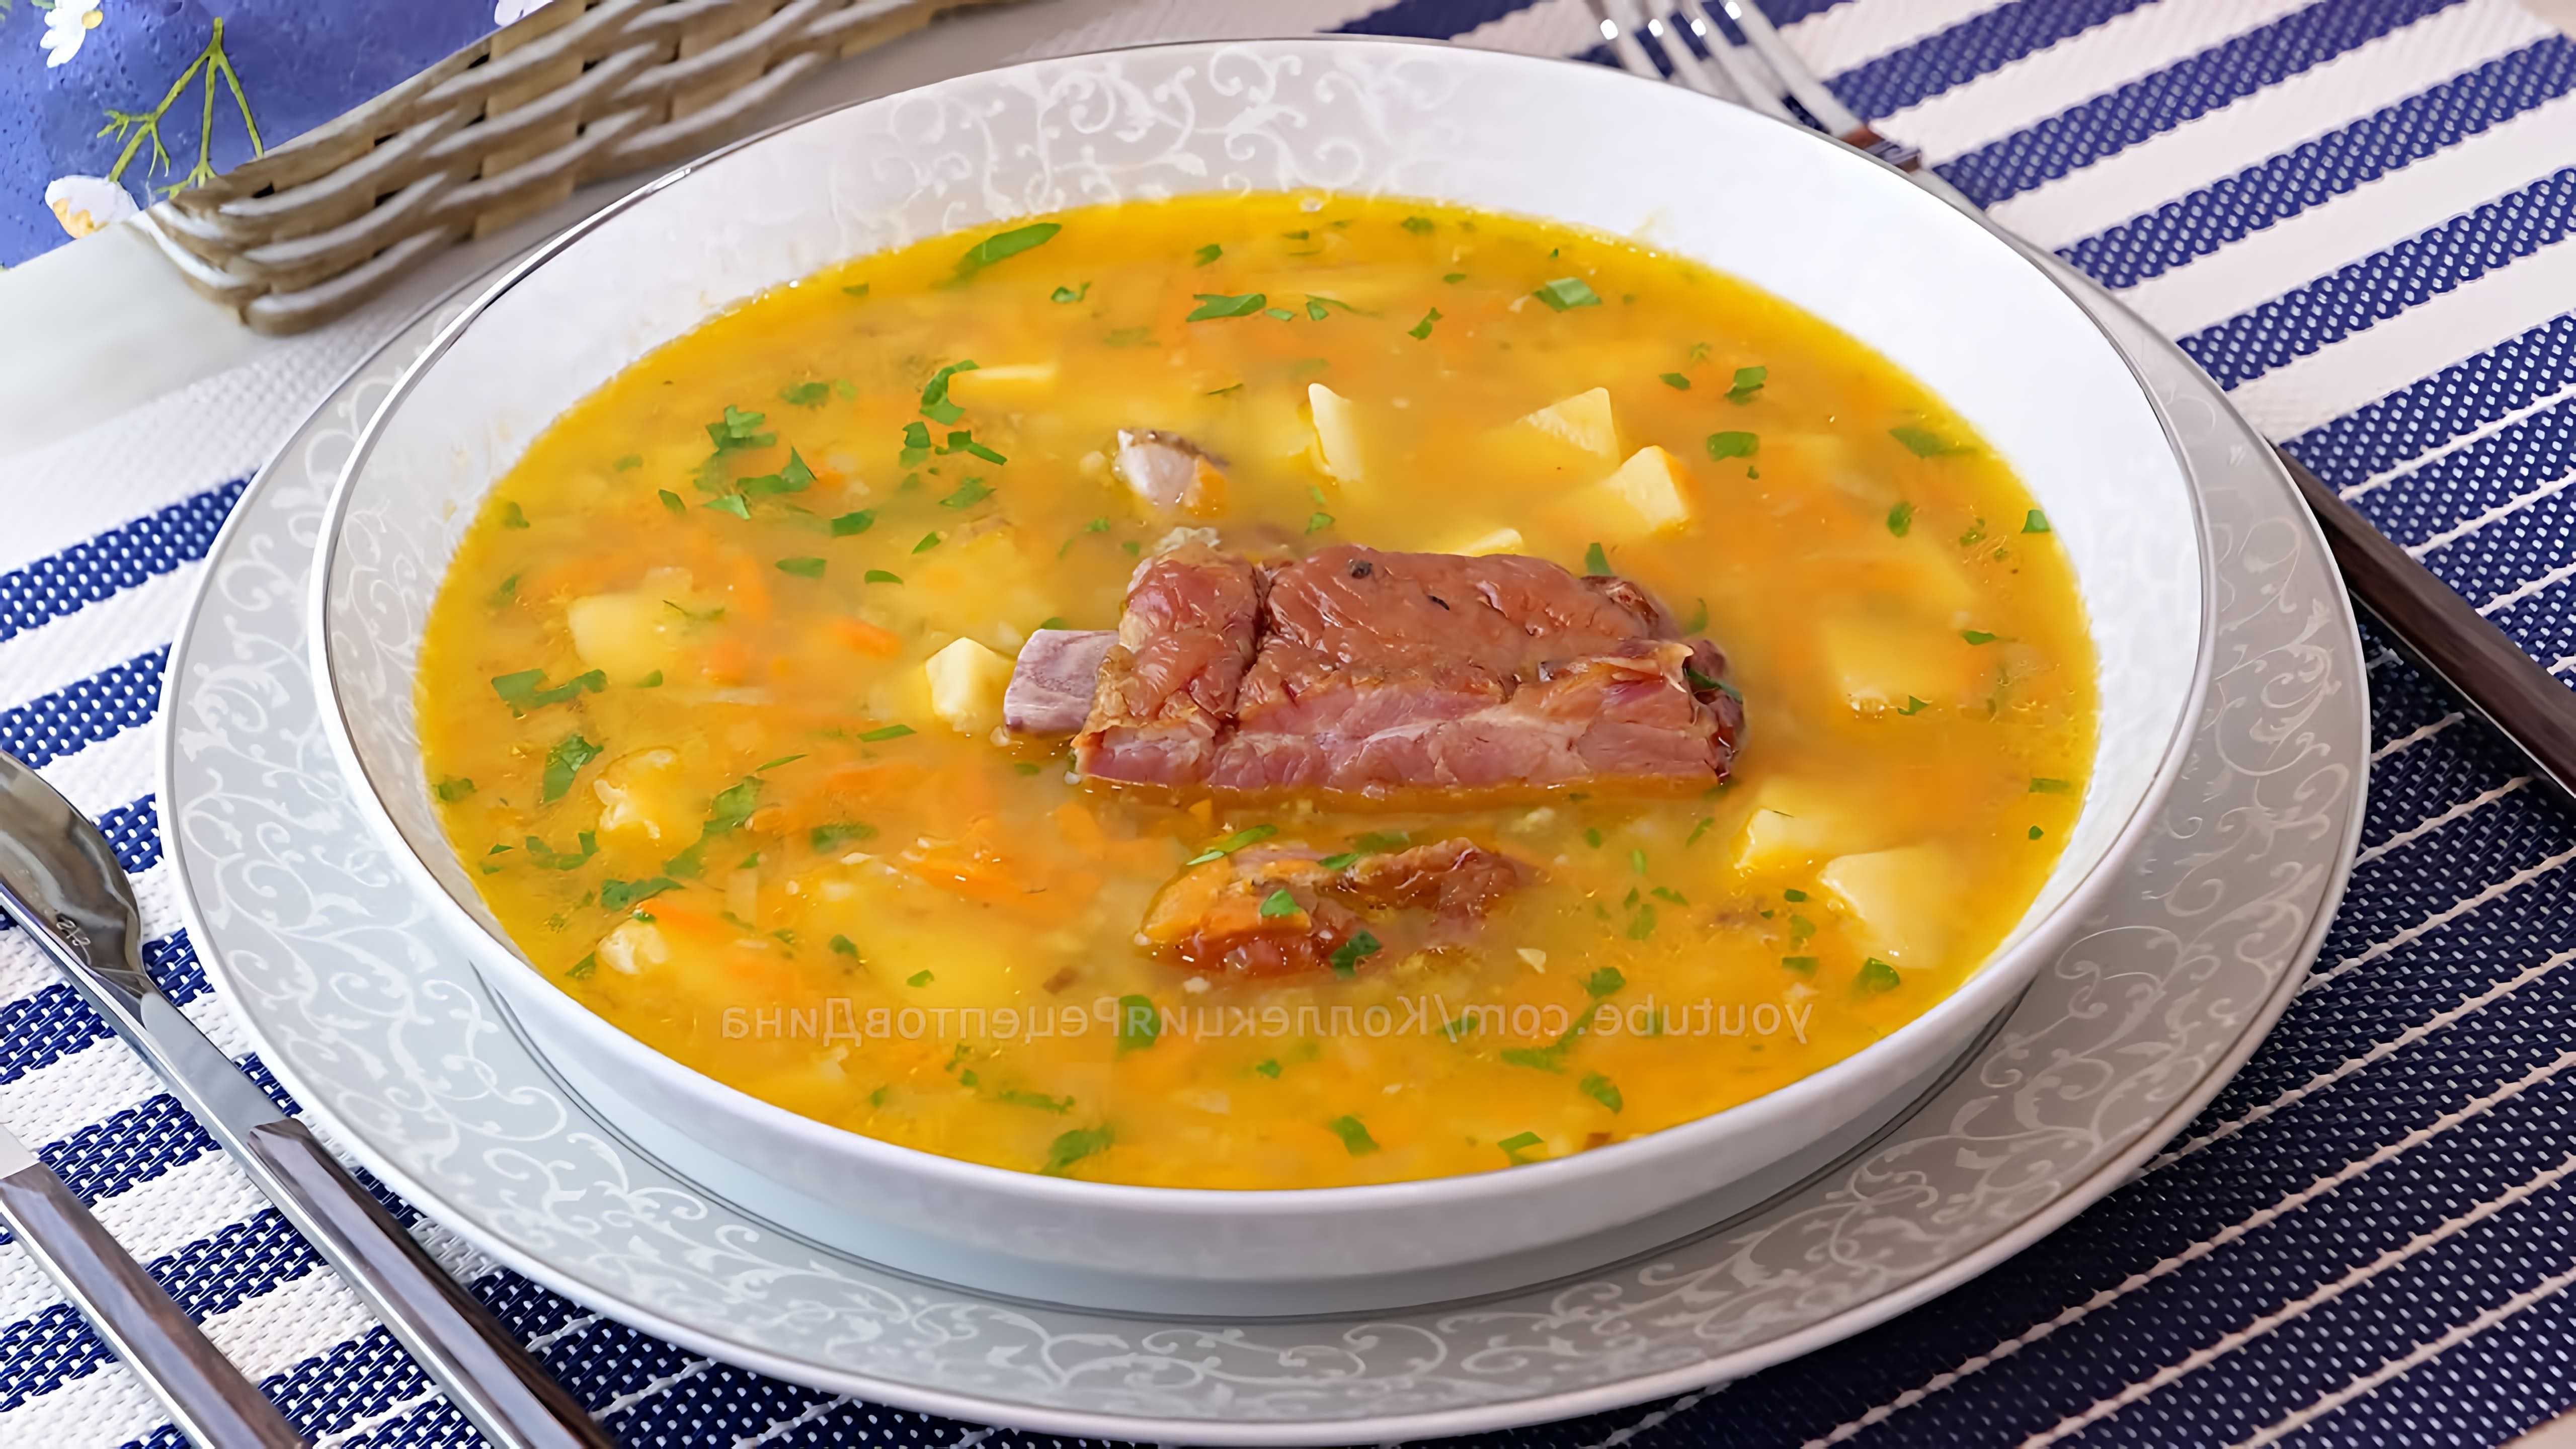 Видео рецепт горохового супа с копчеными ребрами, который создатель называет одним из самых популярных и любимых супов в их семье